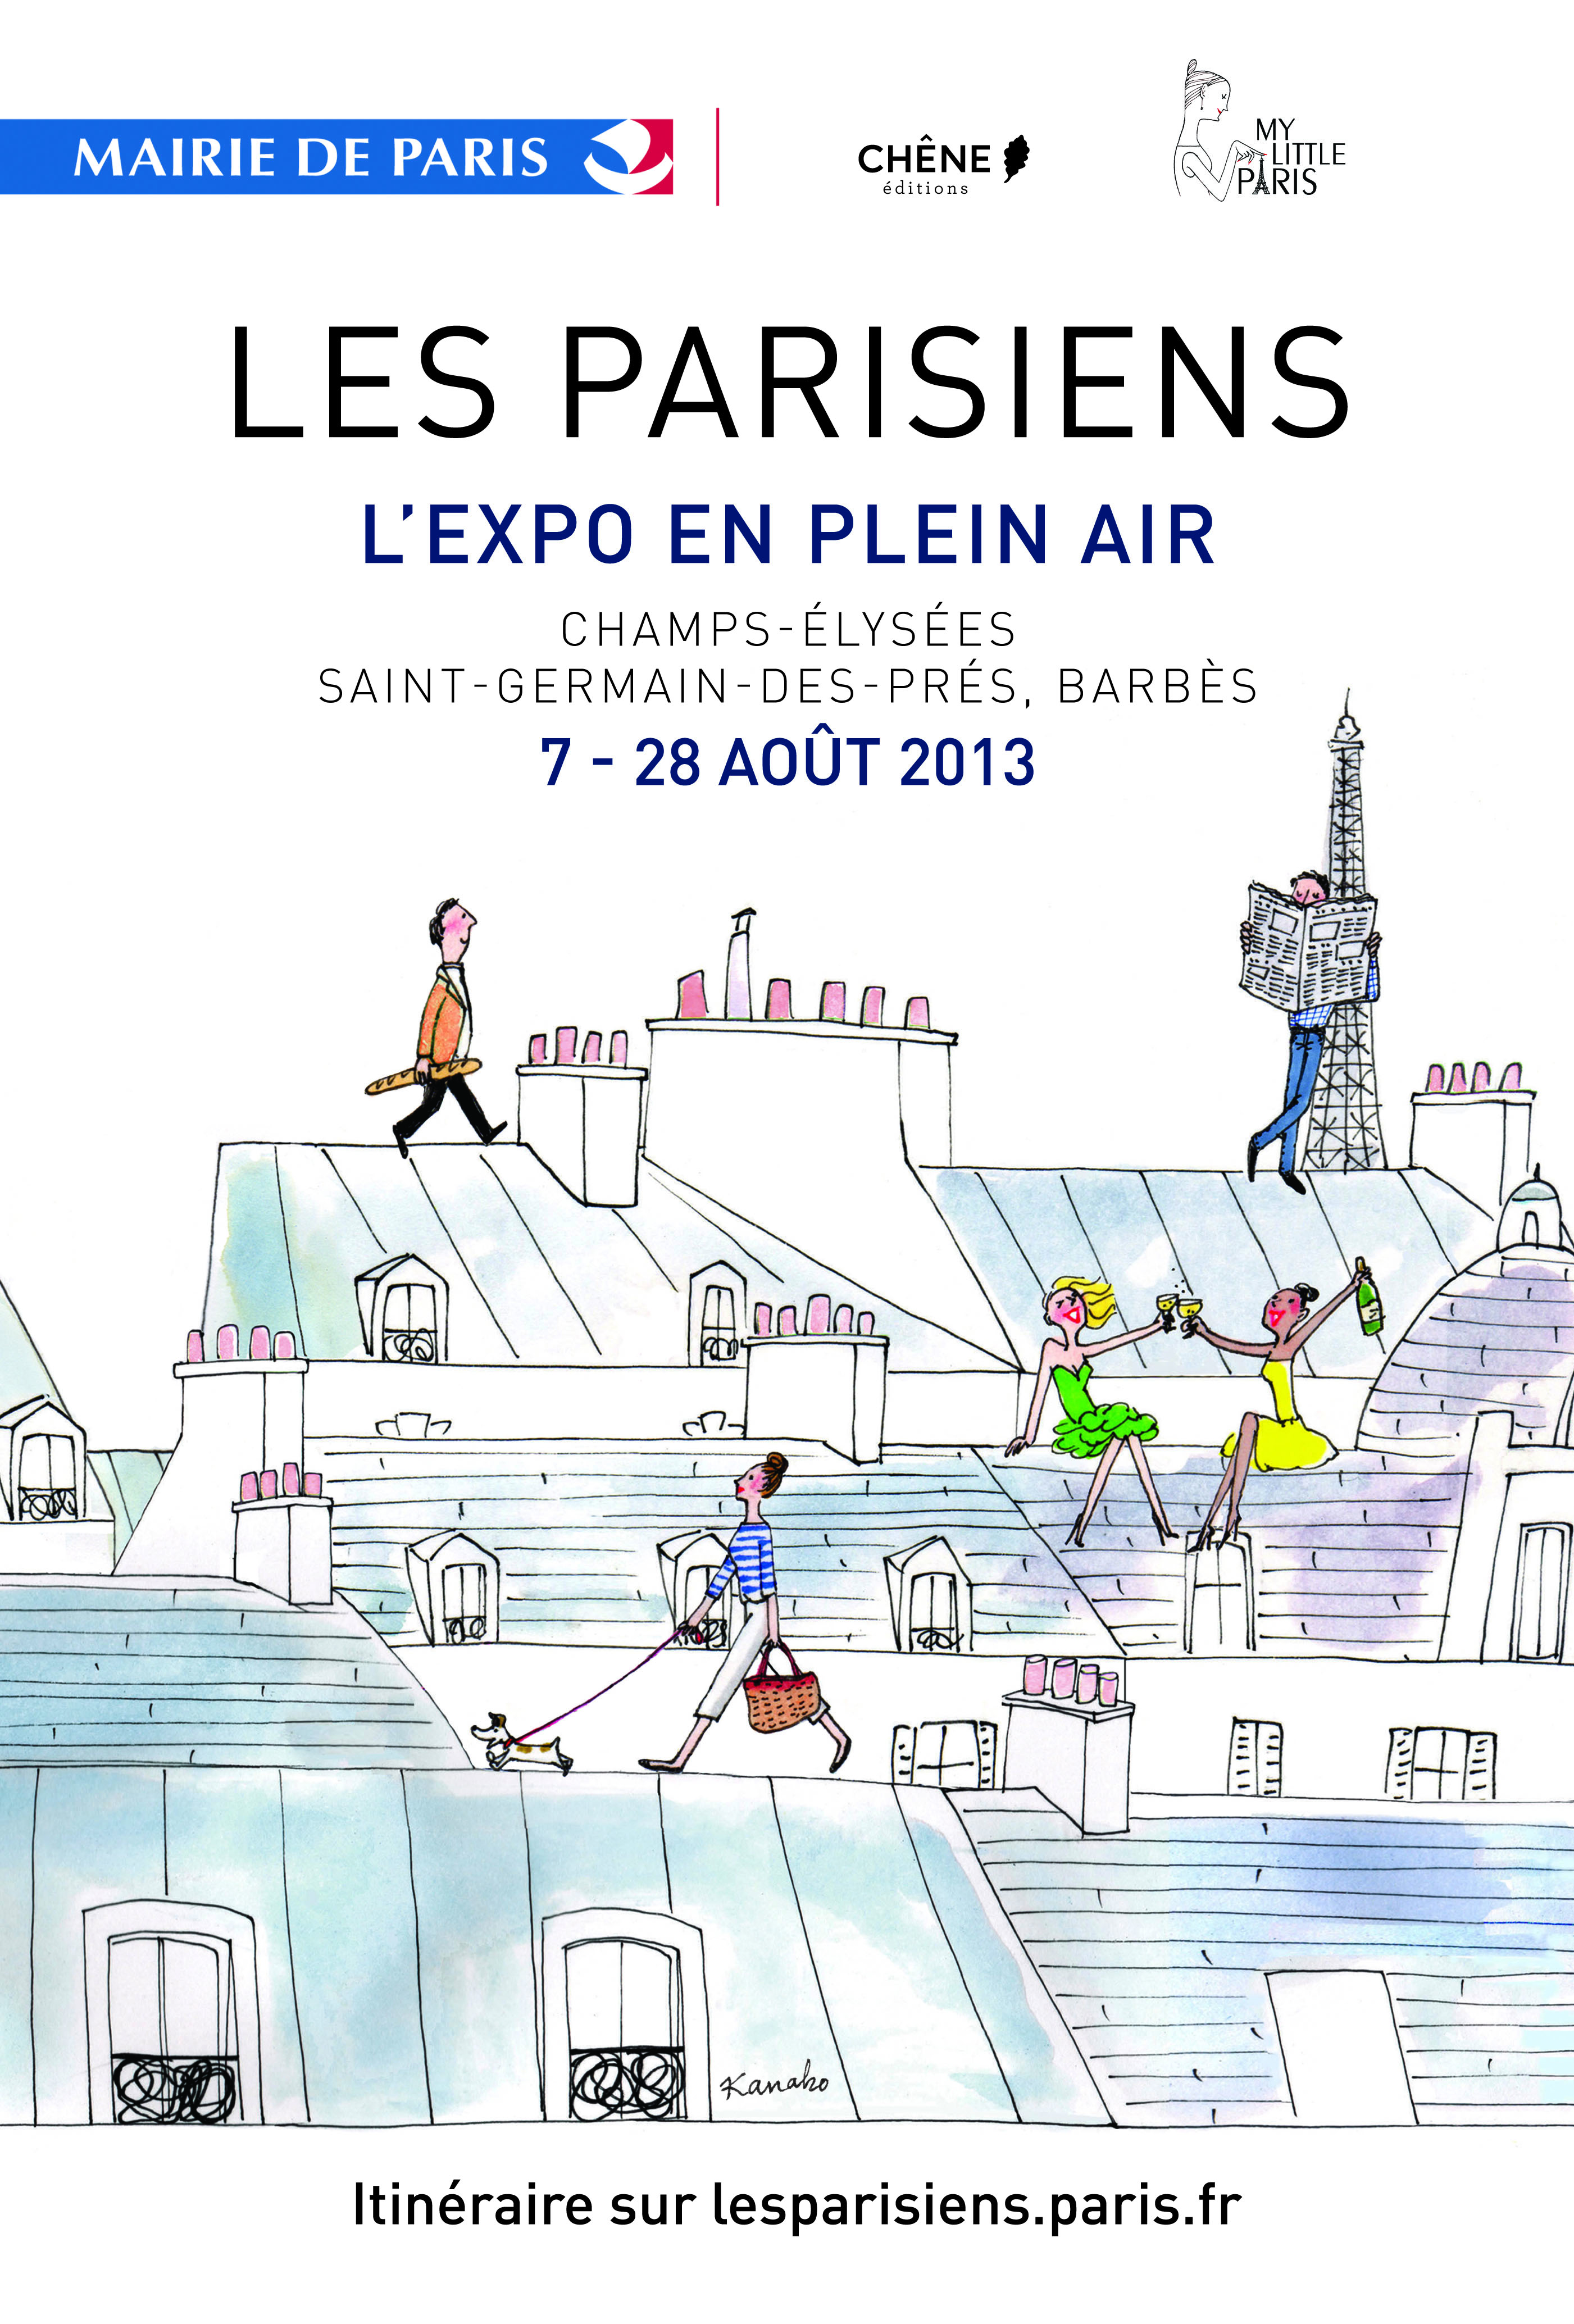 Les Parisiens, une expo en plein air à Paris